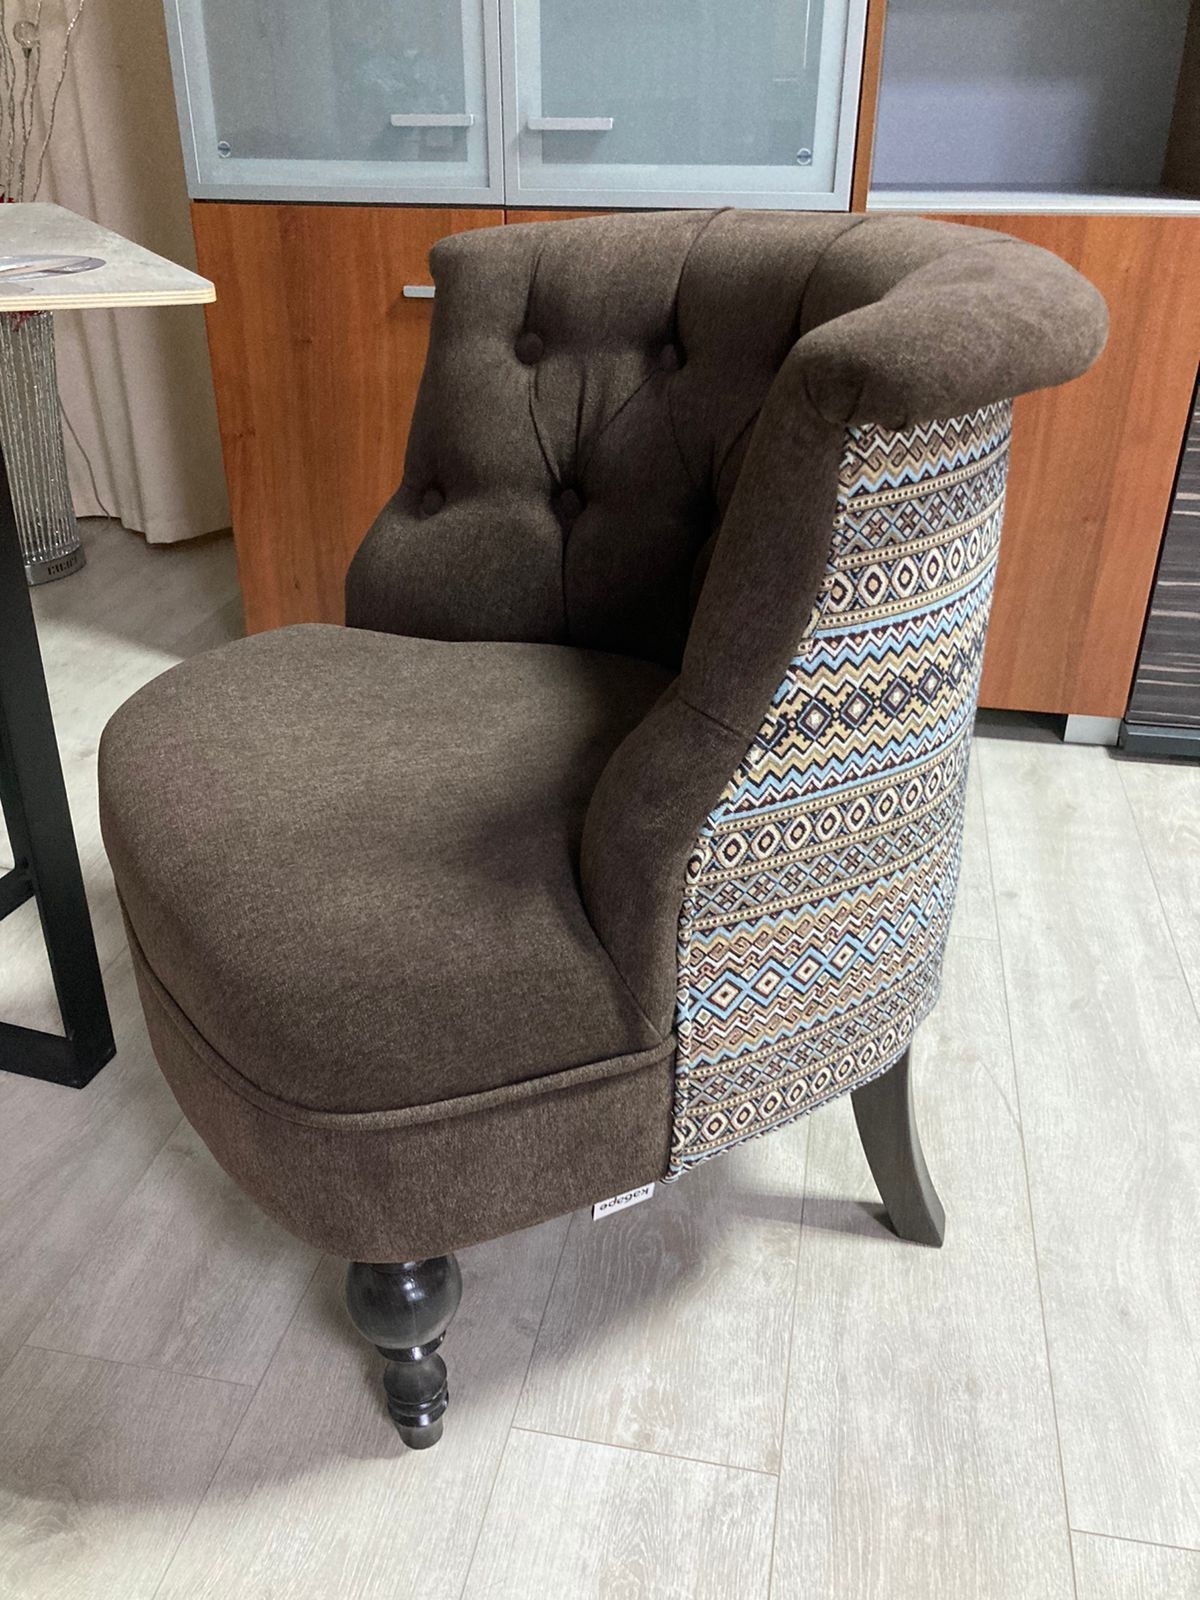 Кресло "Буржуа" внутри Shaggy шоколад, заглушка гобелен КУПАВНА. Старая цена - 22000 руб. Новая цена - 9900 руб.